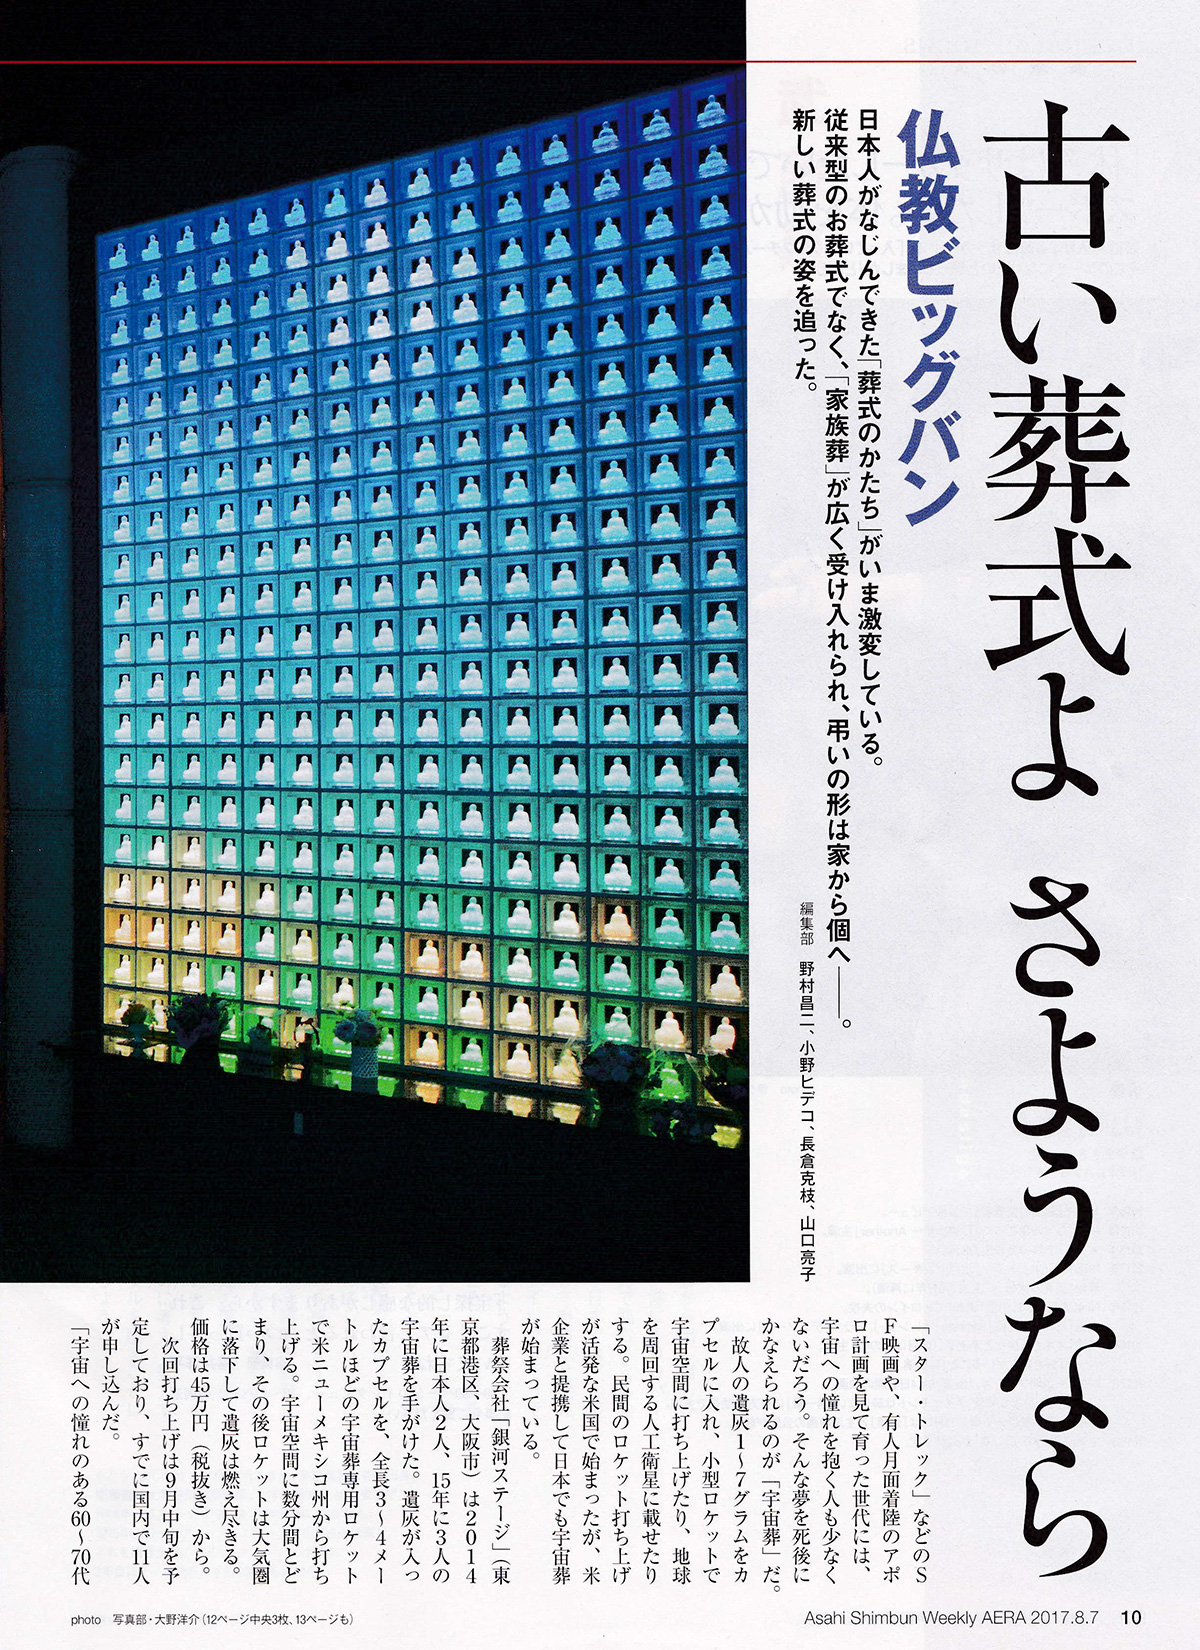 朝日新聞出版『AERA』にて、
宇宙葬に関するインタビューが掲載されました。3